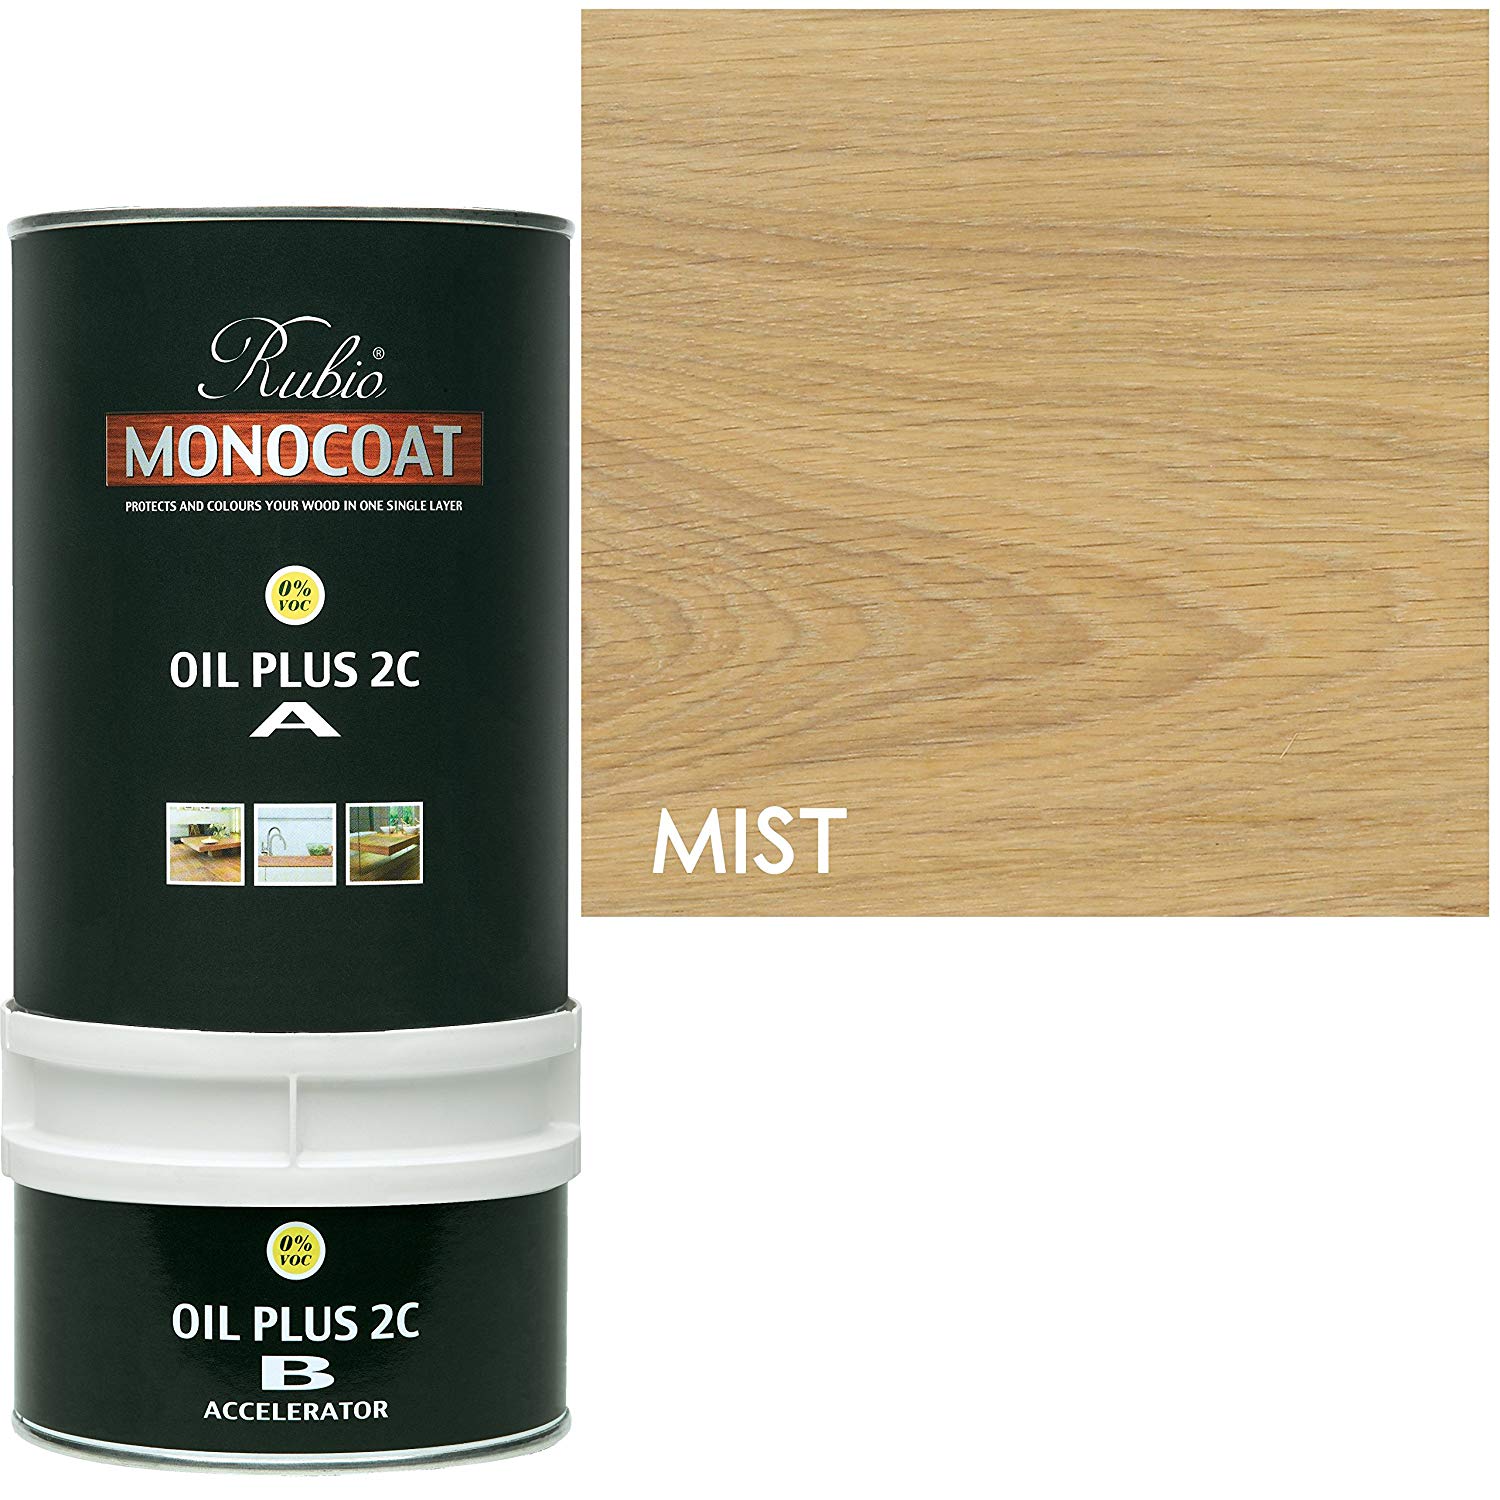 Rubio Monocoat Oil Plus 2C - Mist